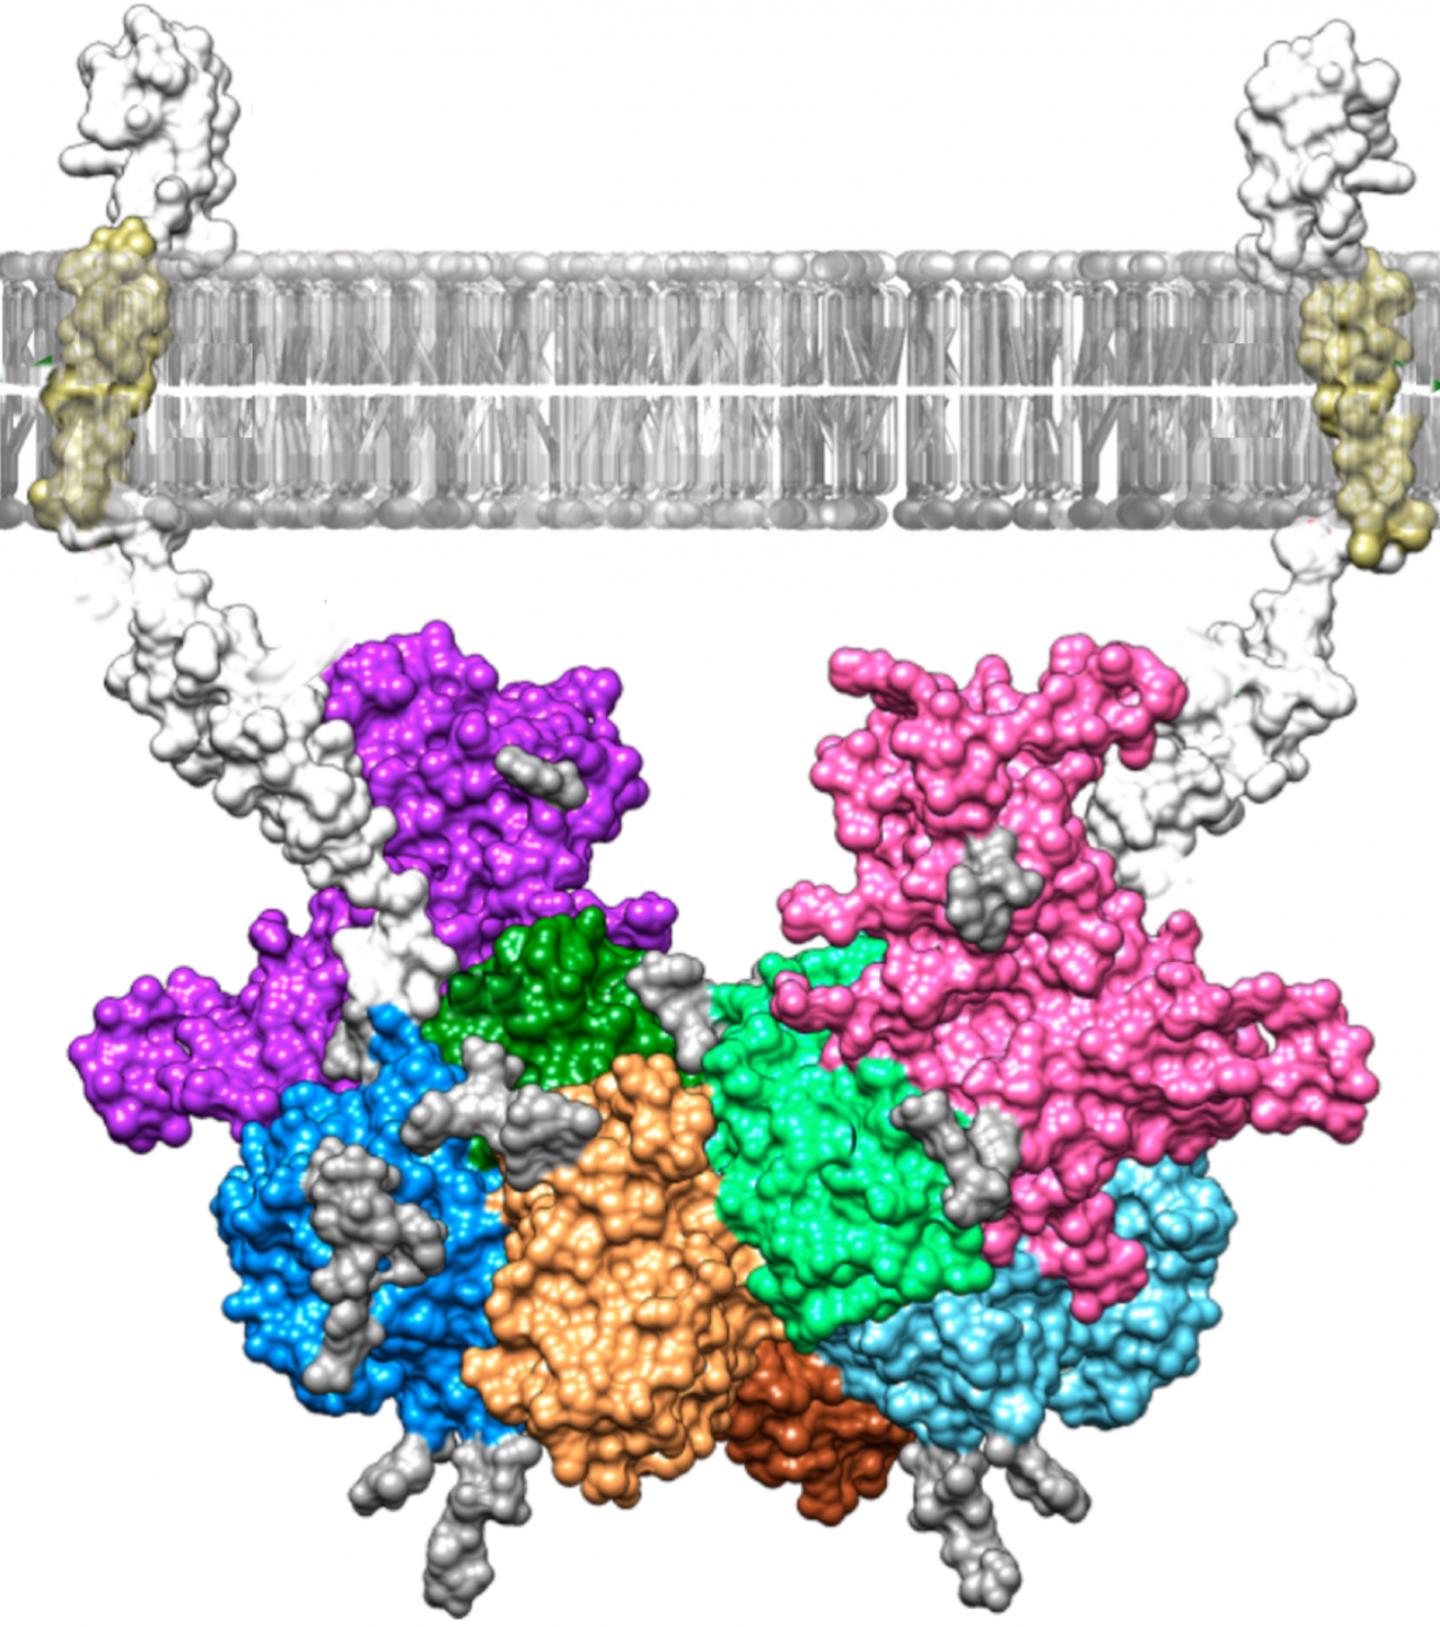 molecular complex model